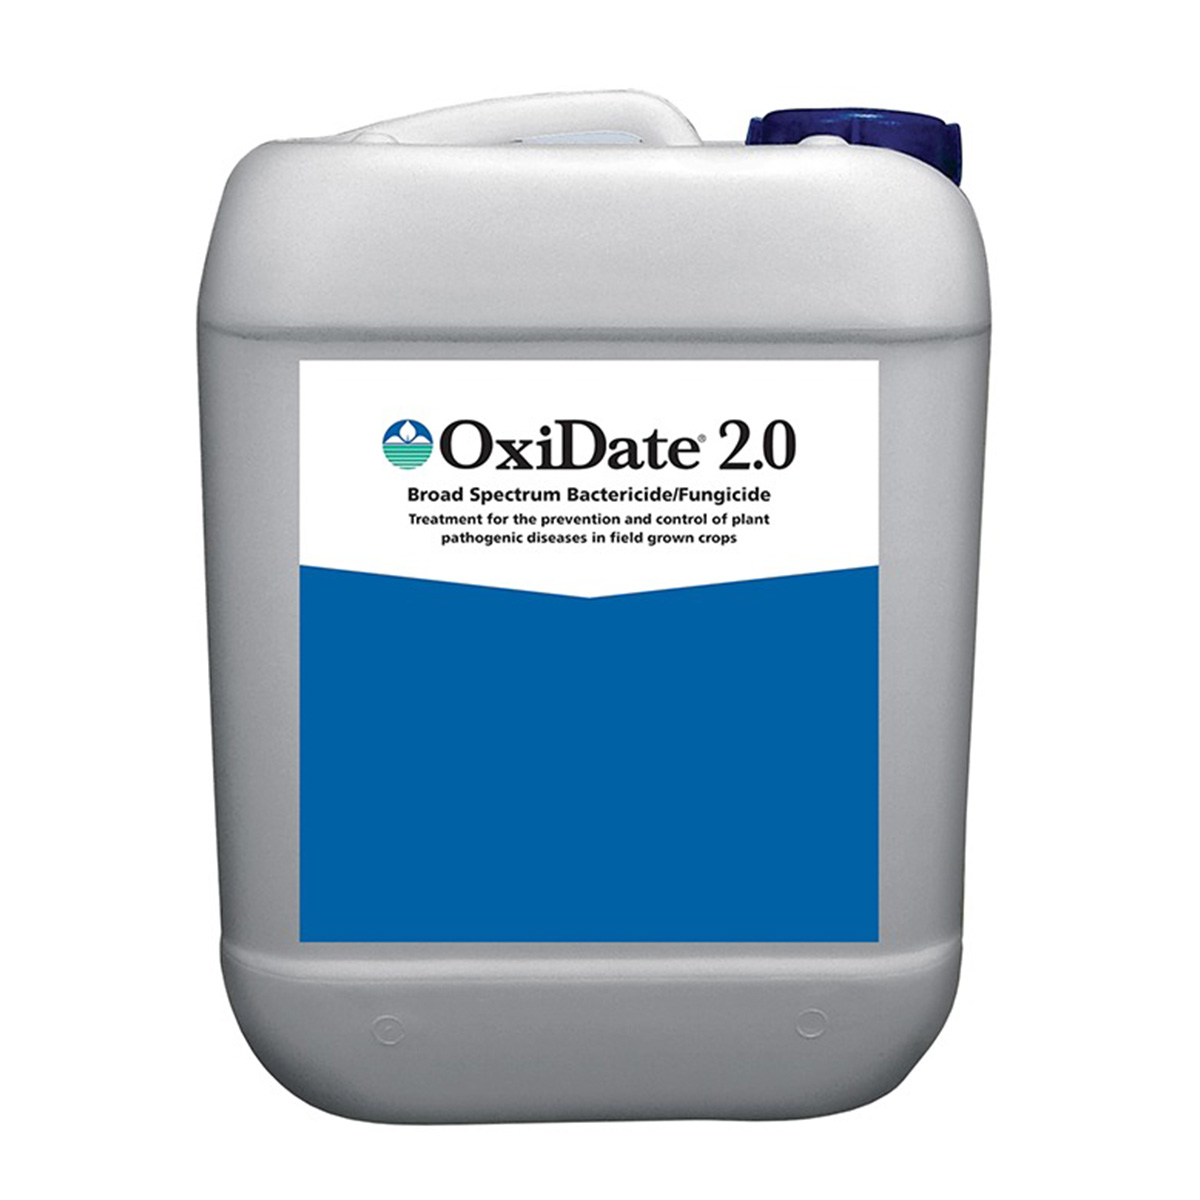 BioSafe Oxidate 2.0